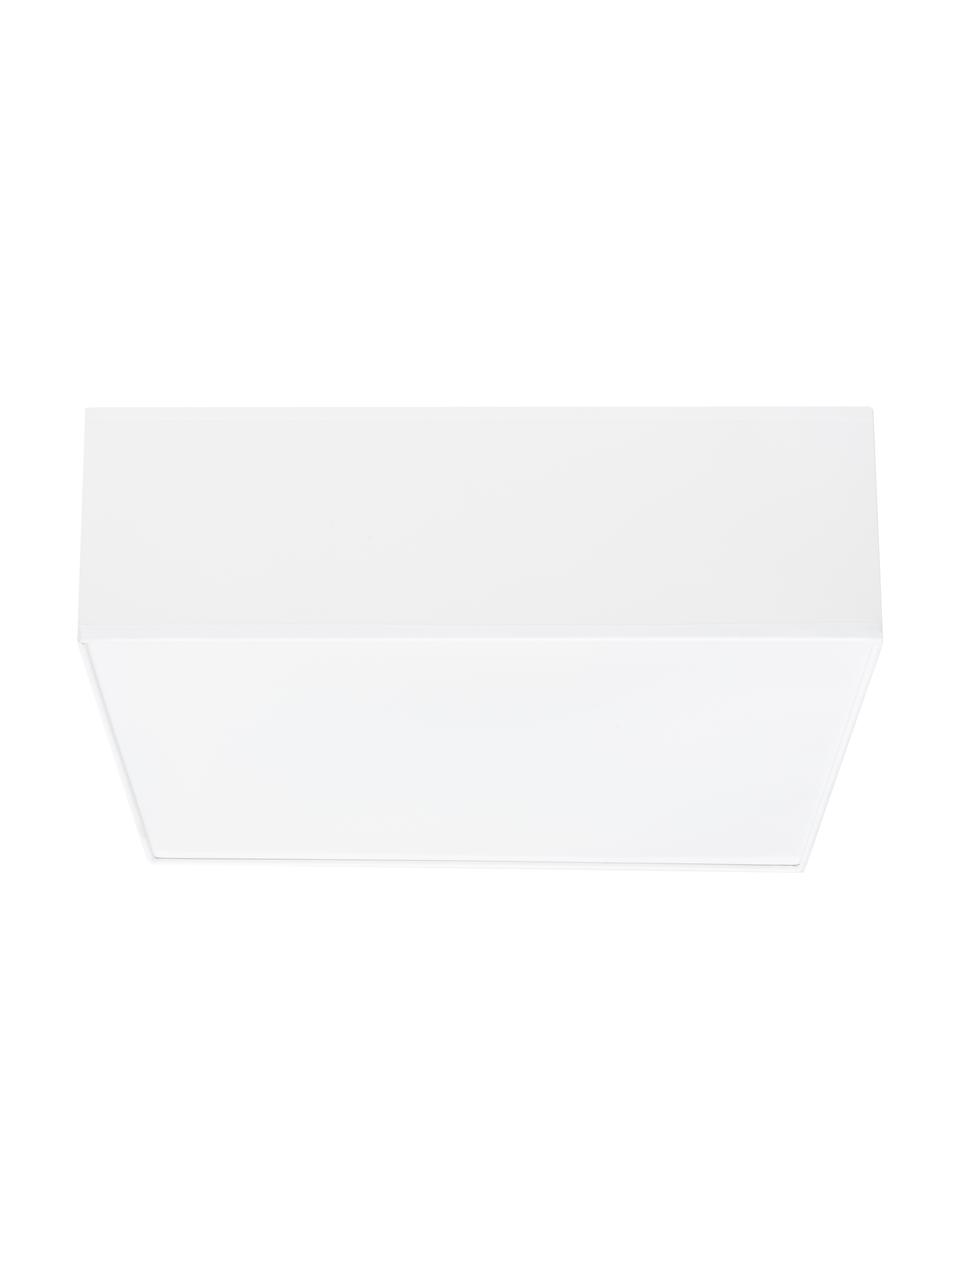 Deckenleuchte Mitra aus Kunststoff, Kunststoff (PVC), Rahmen: Weiß<br>Diffusor: Weiß, 35 x 12 cm